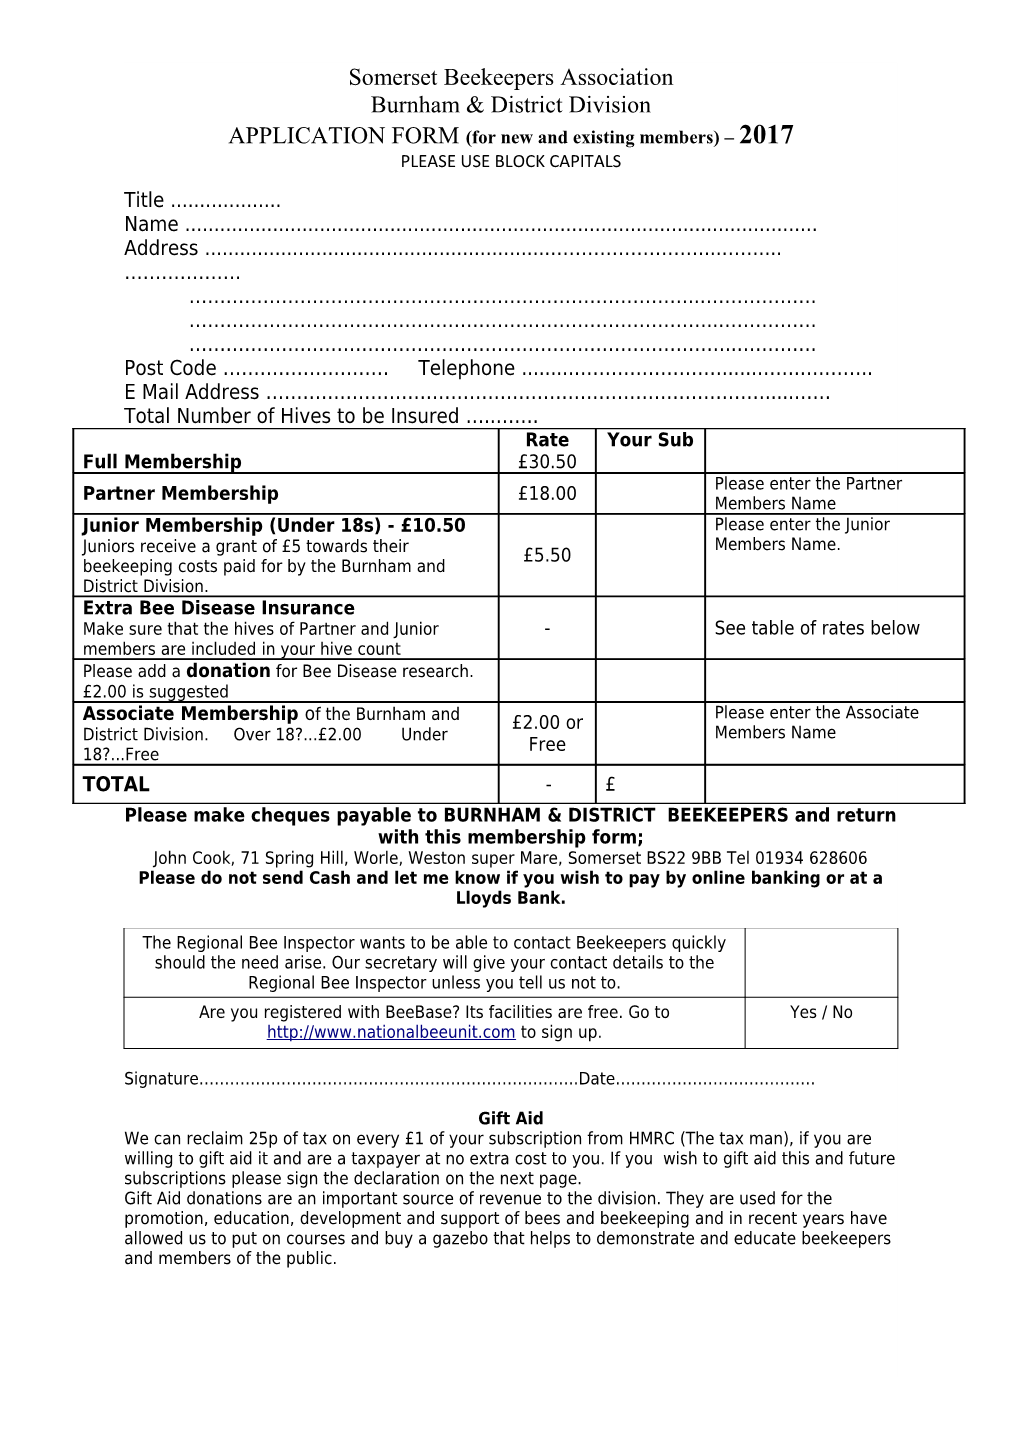 Burnham Beekeepers Membership Form 2015